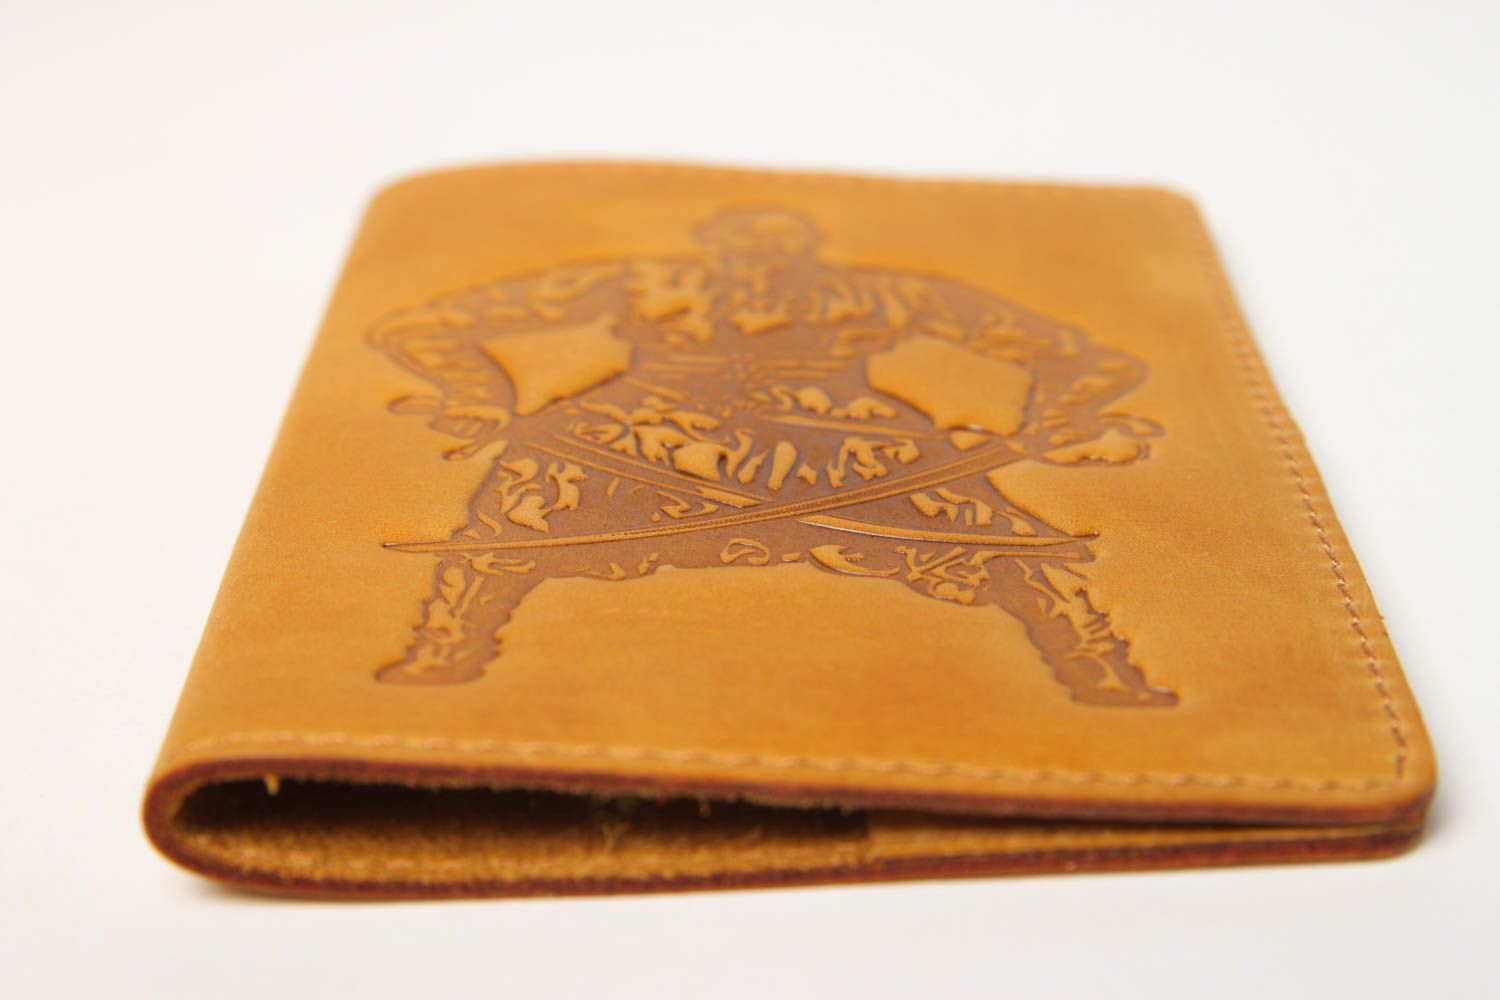 Unusual handmade passport cover leather passport cover handmade gifts photo 4